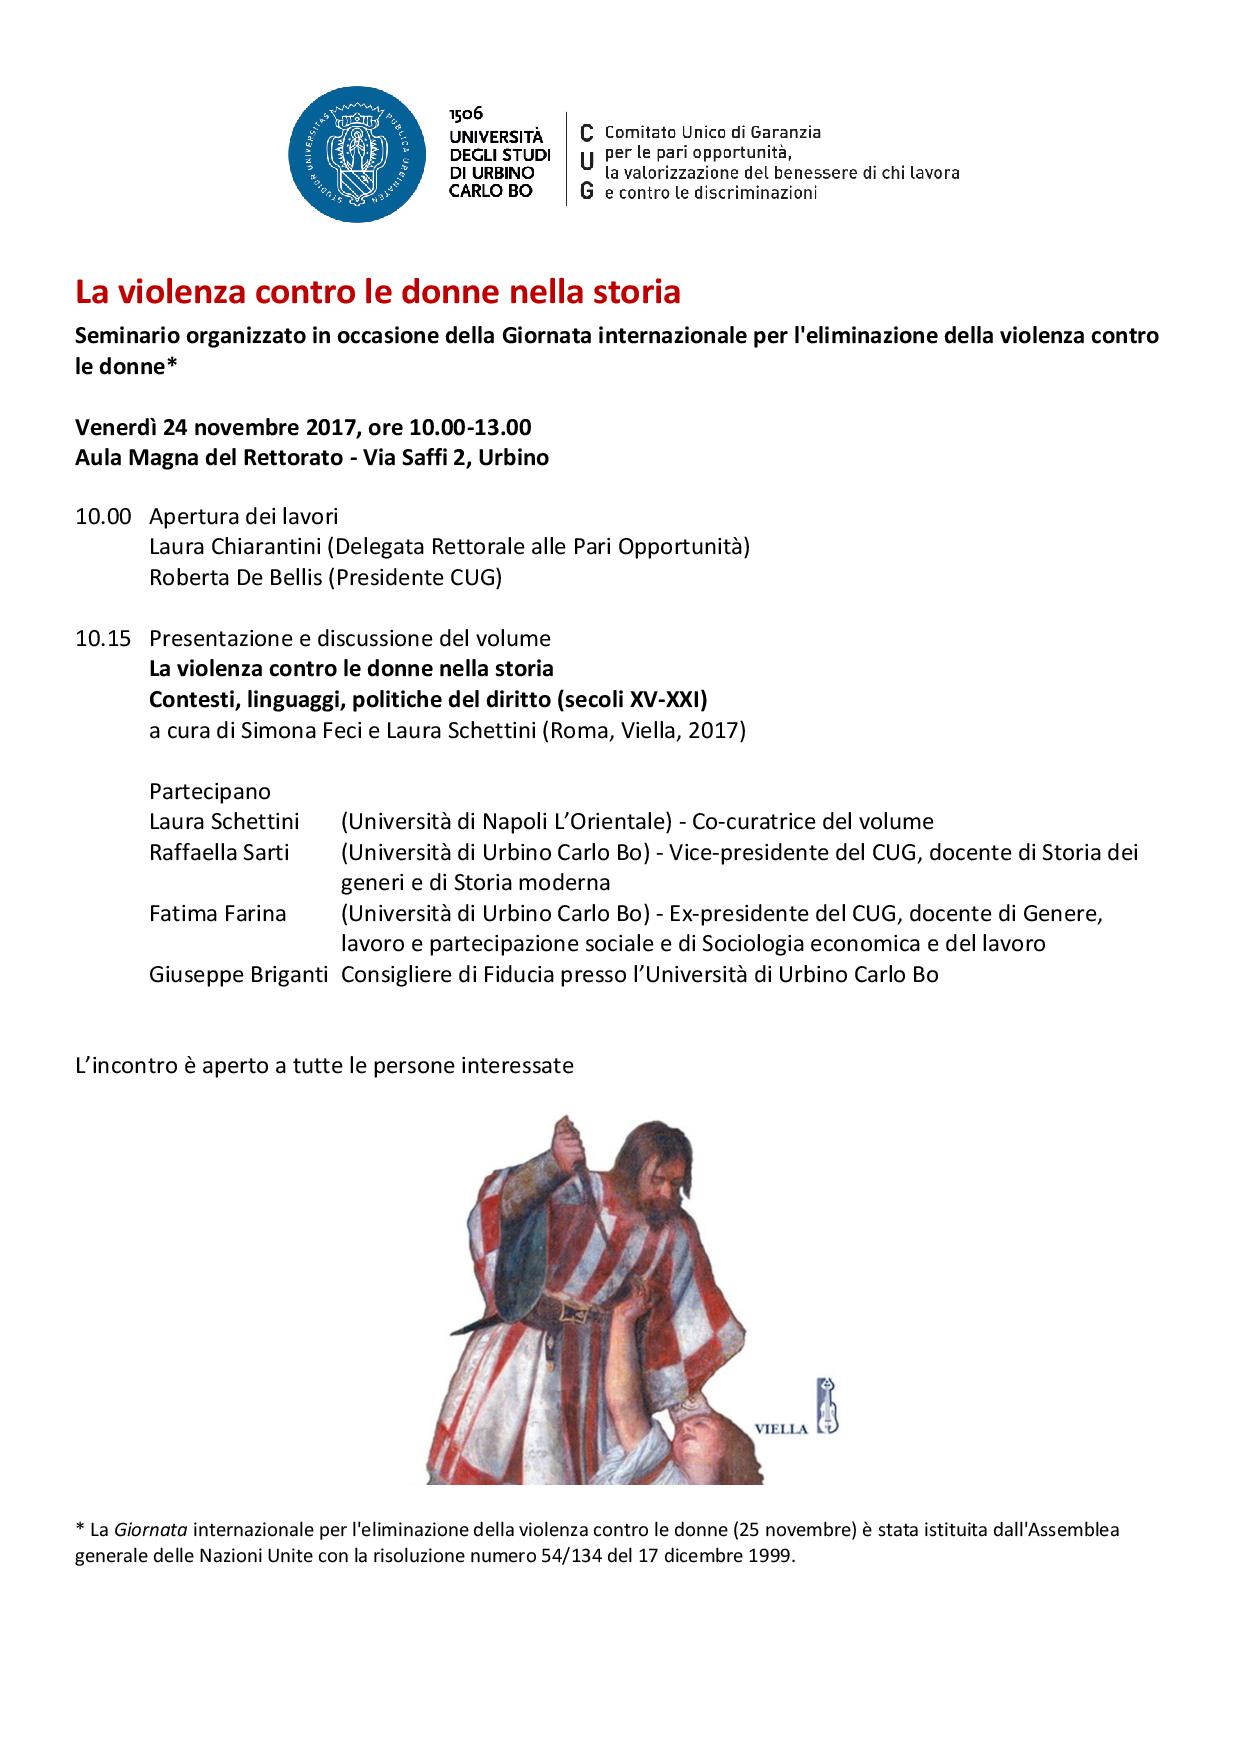 Violenza contro le donne nella storia: se ne parla in Urbino il 24 novembre 2017